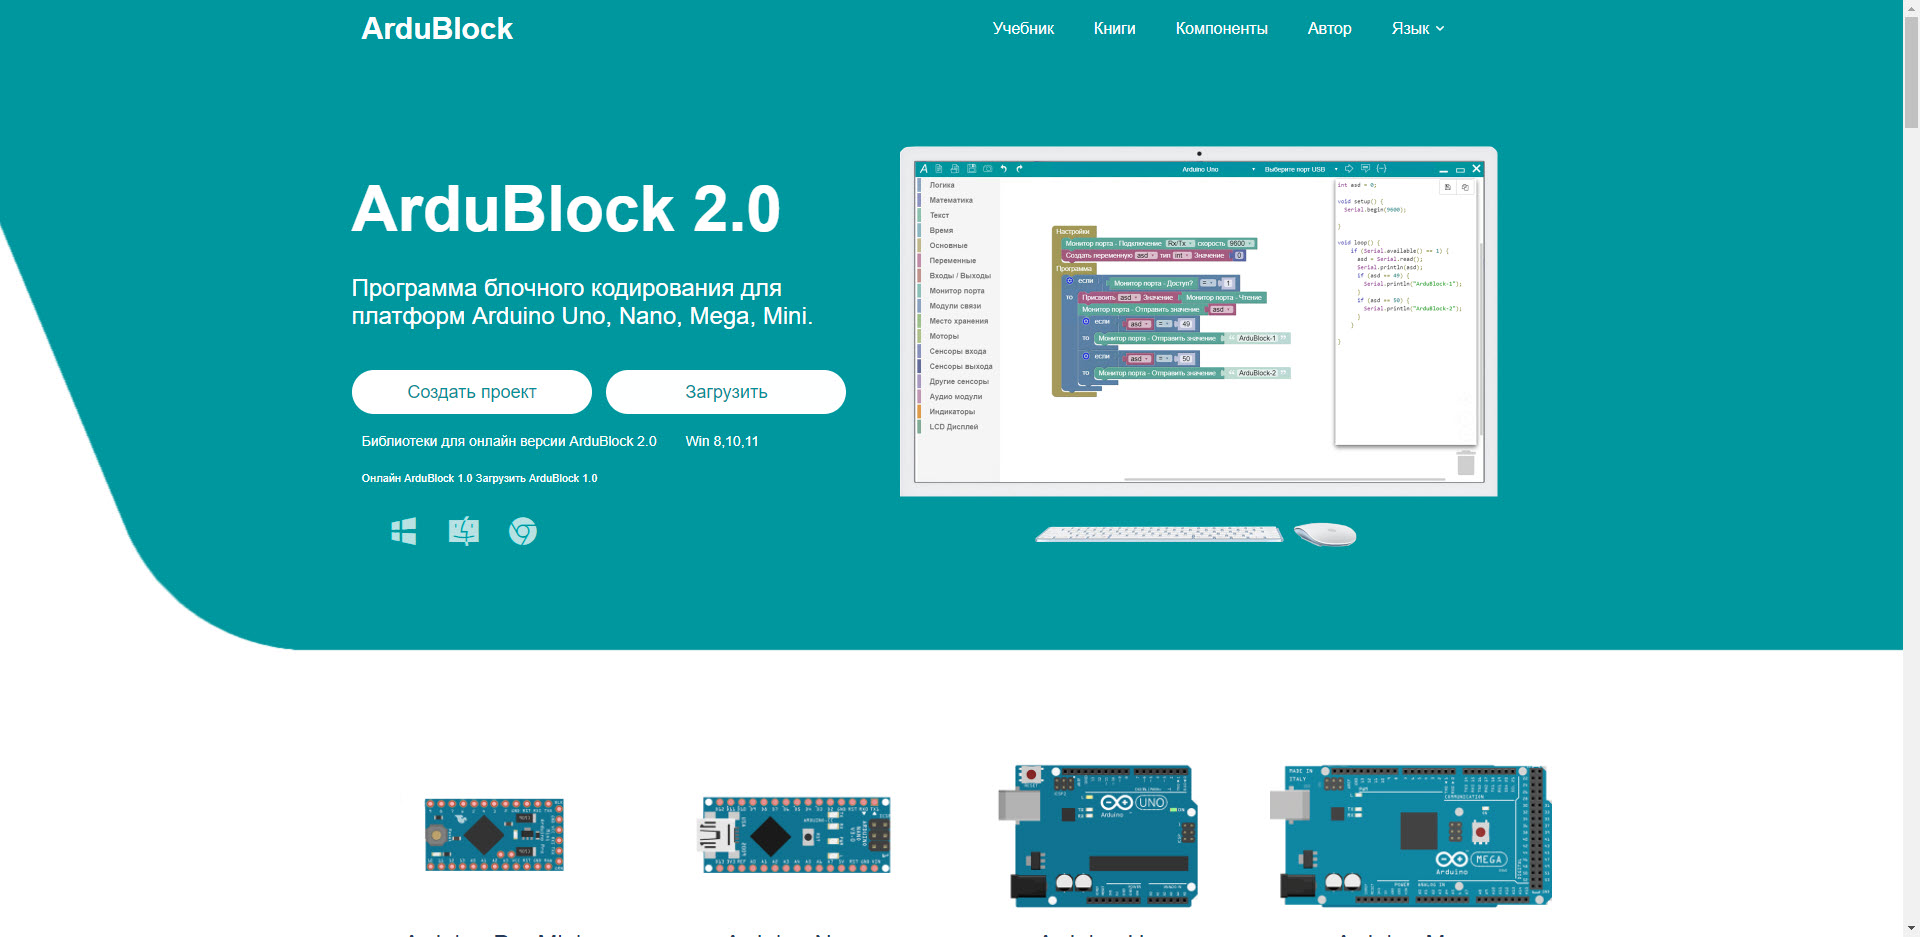 Официальная страница ArduBlock.